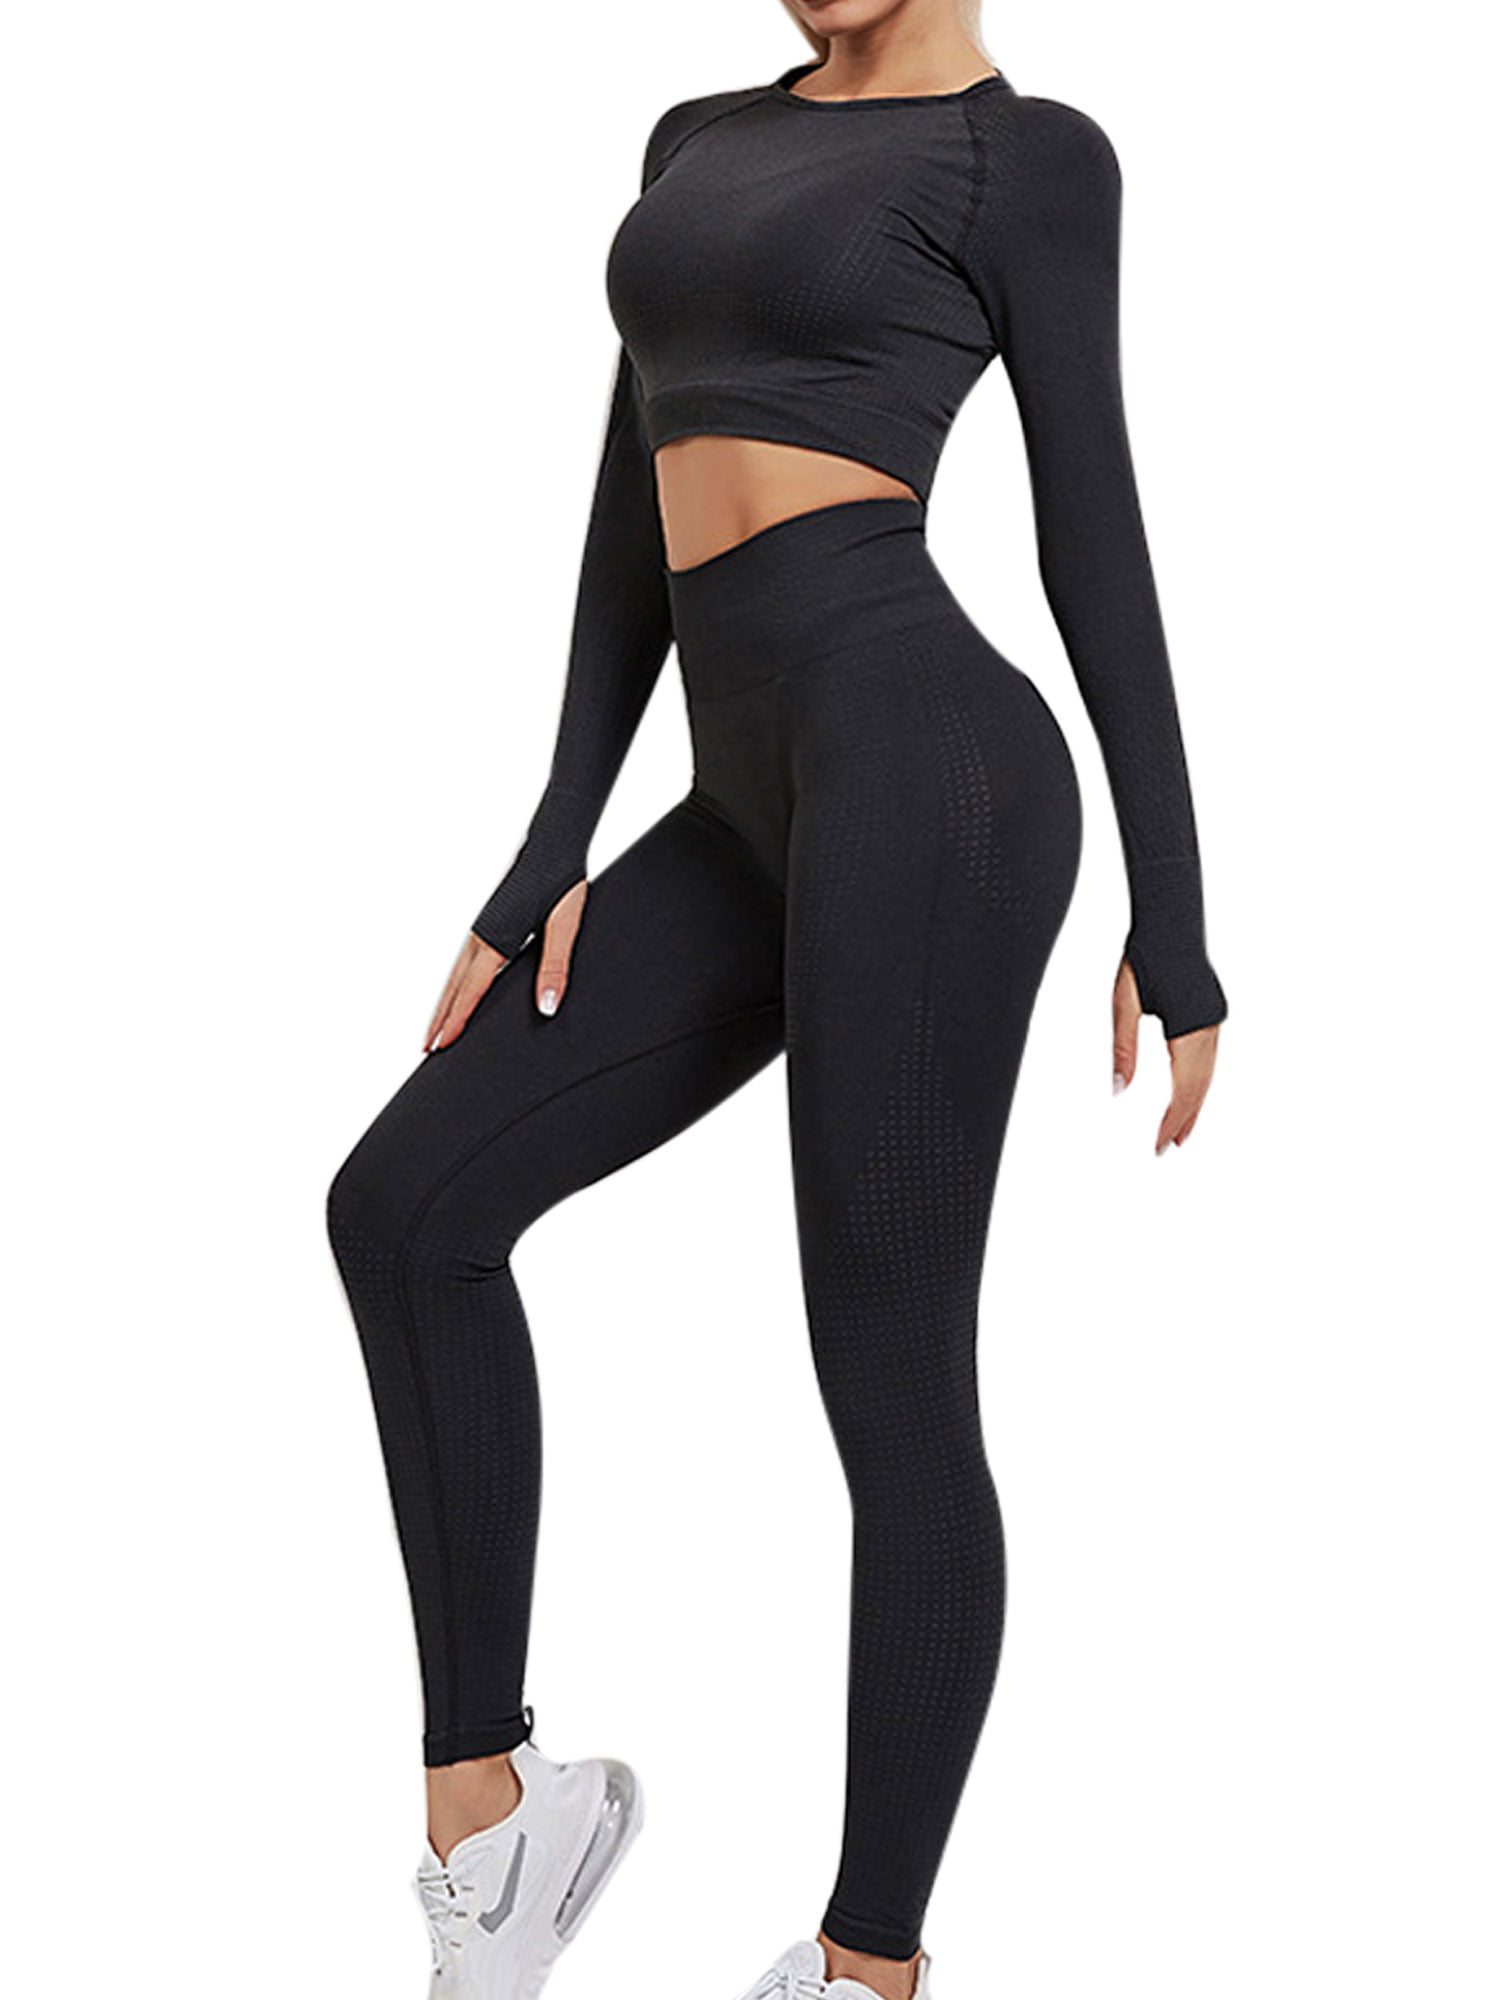 Women's 2Pcs Yoga Suit Crop Tops Leggings Pants Fitness Sport Gym Set Fitness US